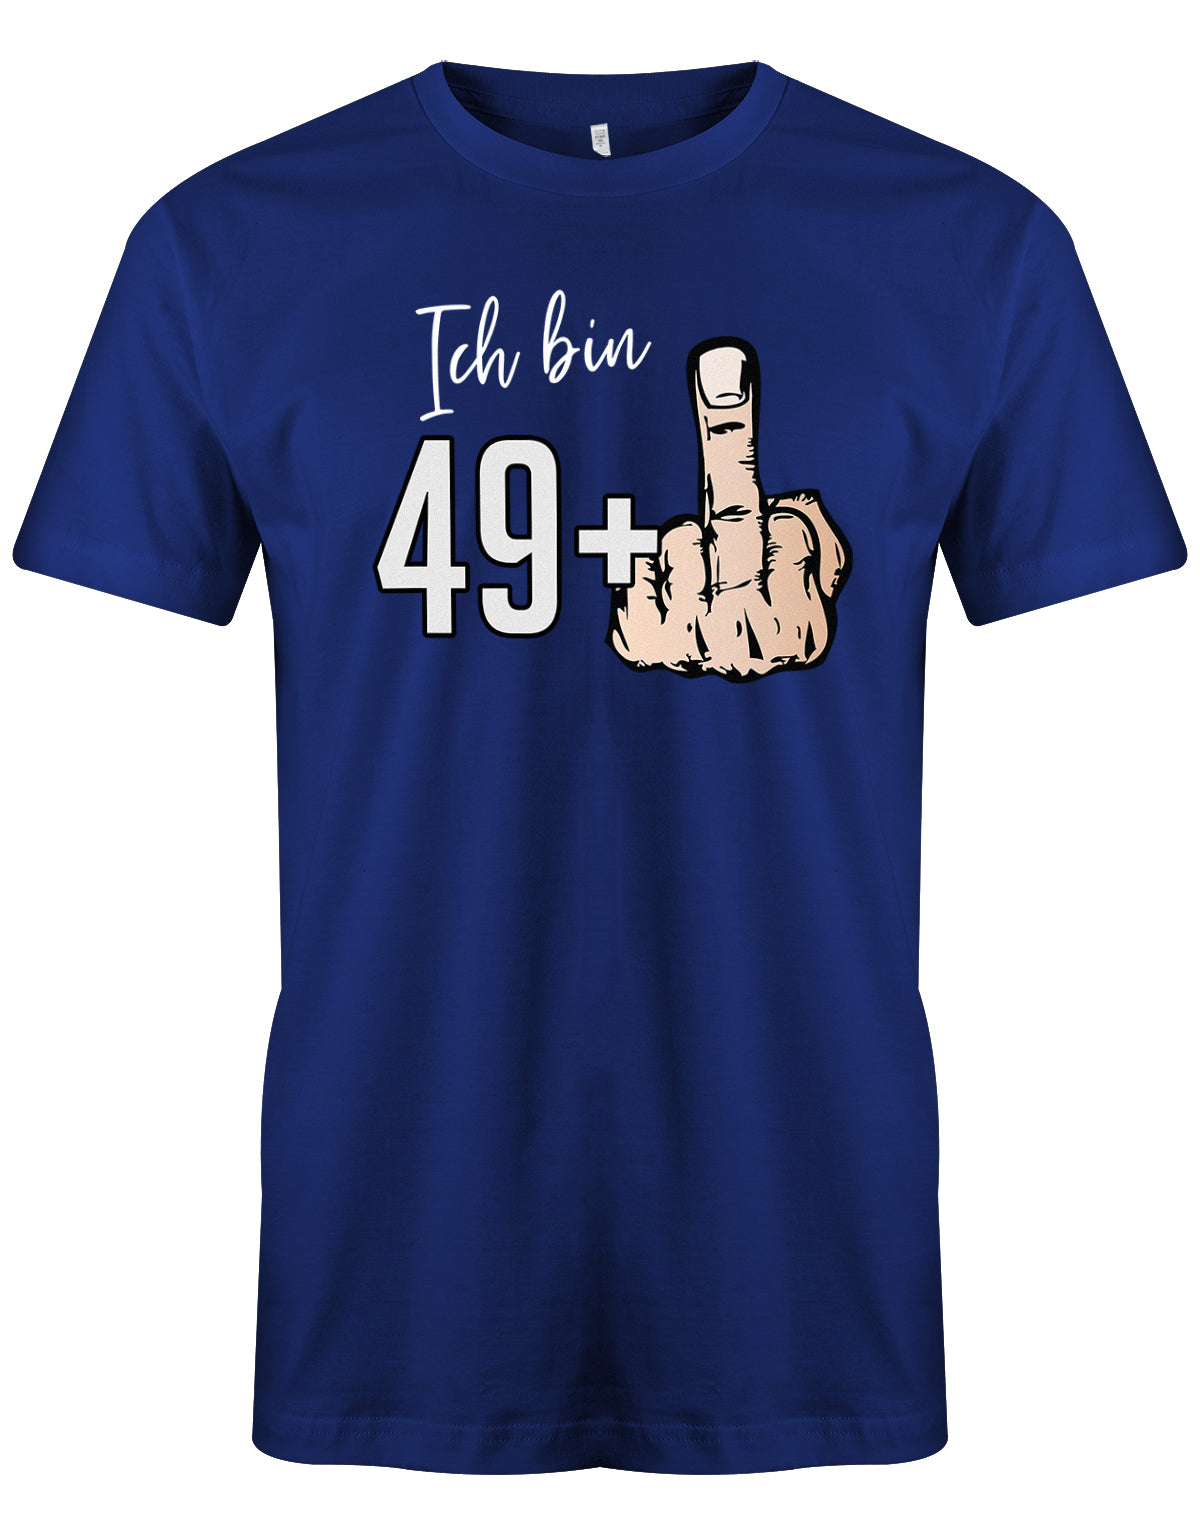 Lustiges T-Shirt zum 50 Geburtstag für den Mann Bedruckt mit Ich bin 49+ Stinkefinger. Royalblau